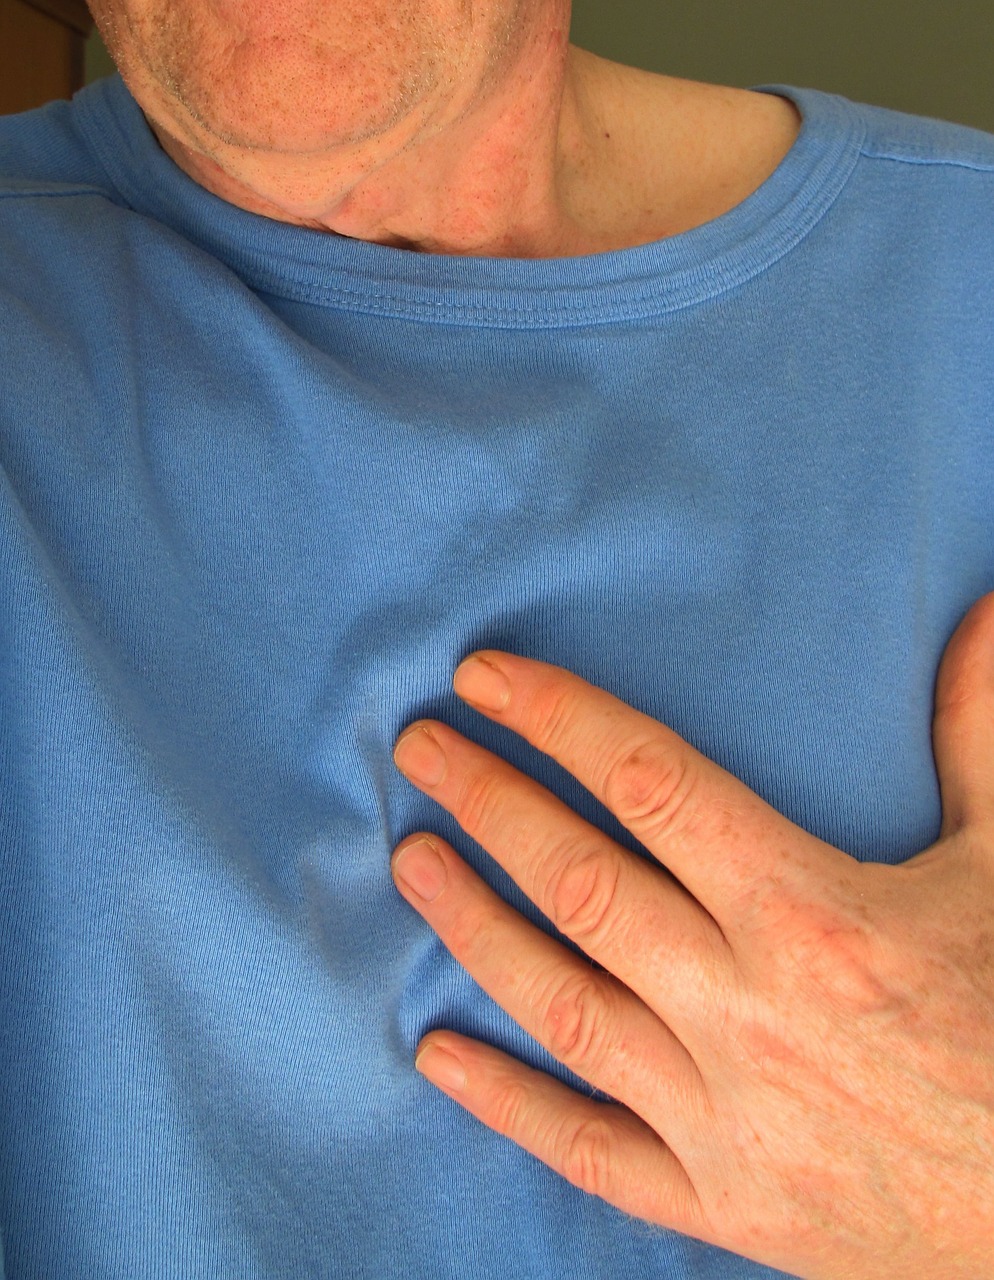 Herzinfarkt Symptome frühzeitig erkennen